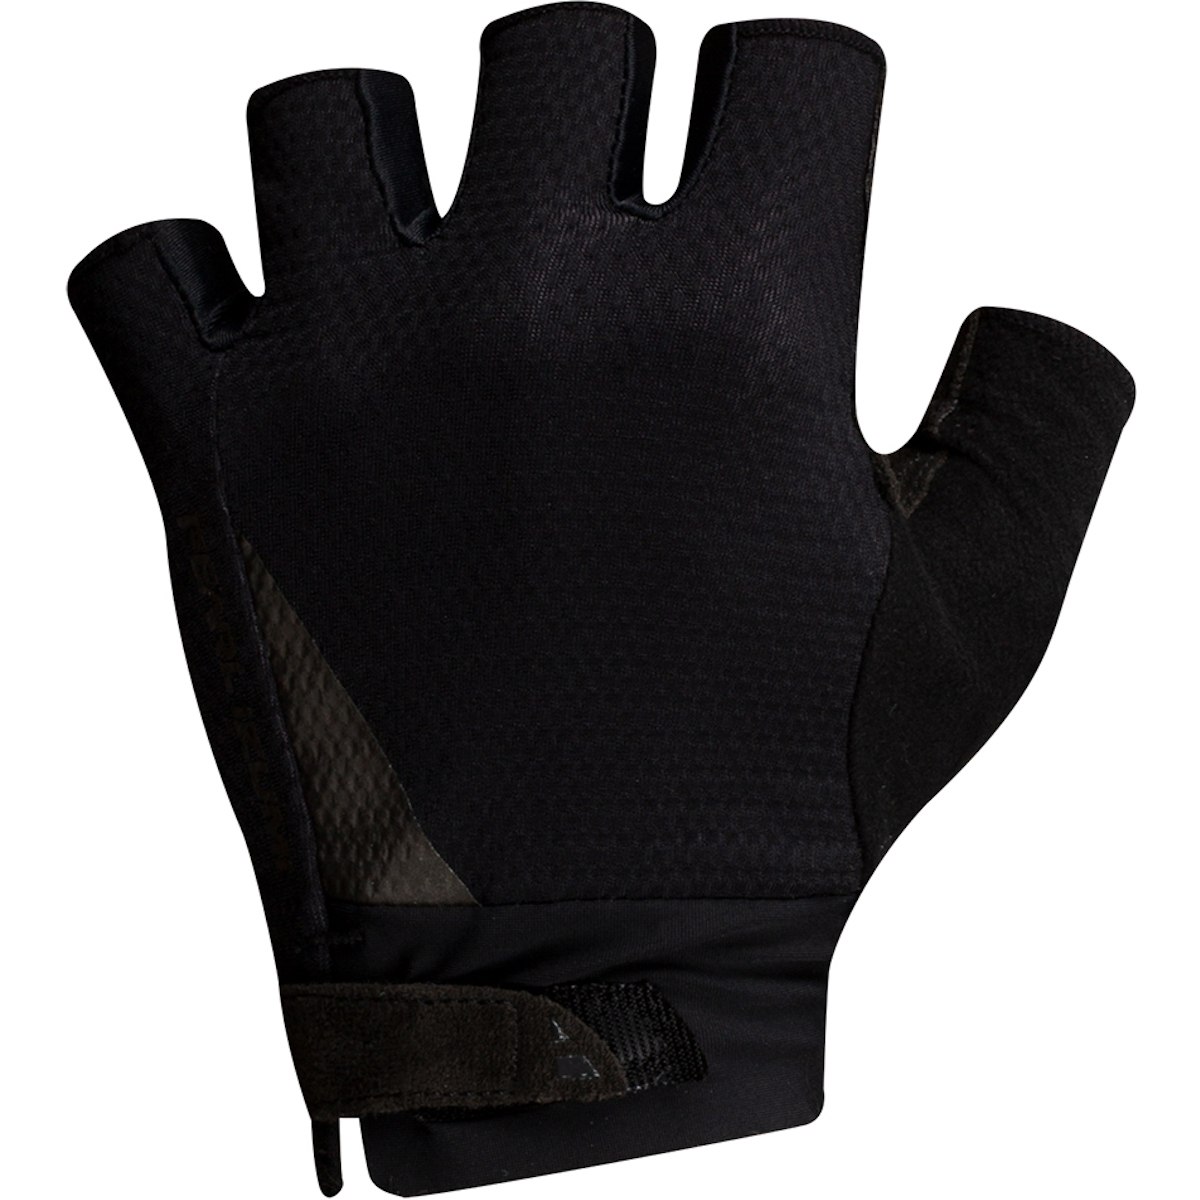 Produktbild von PEARL iZUMi Elite Gel Kurzfinger-Handschuhe Herren 14142002 - schwarz - 021